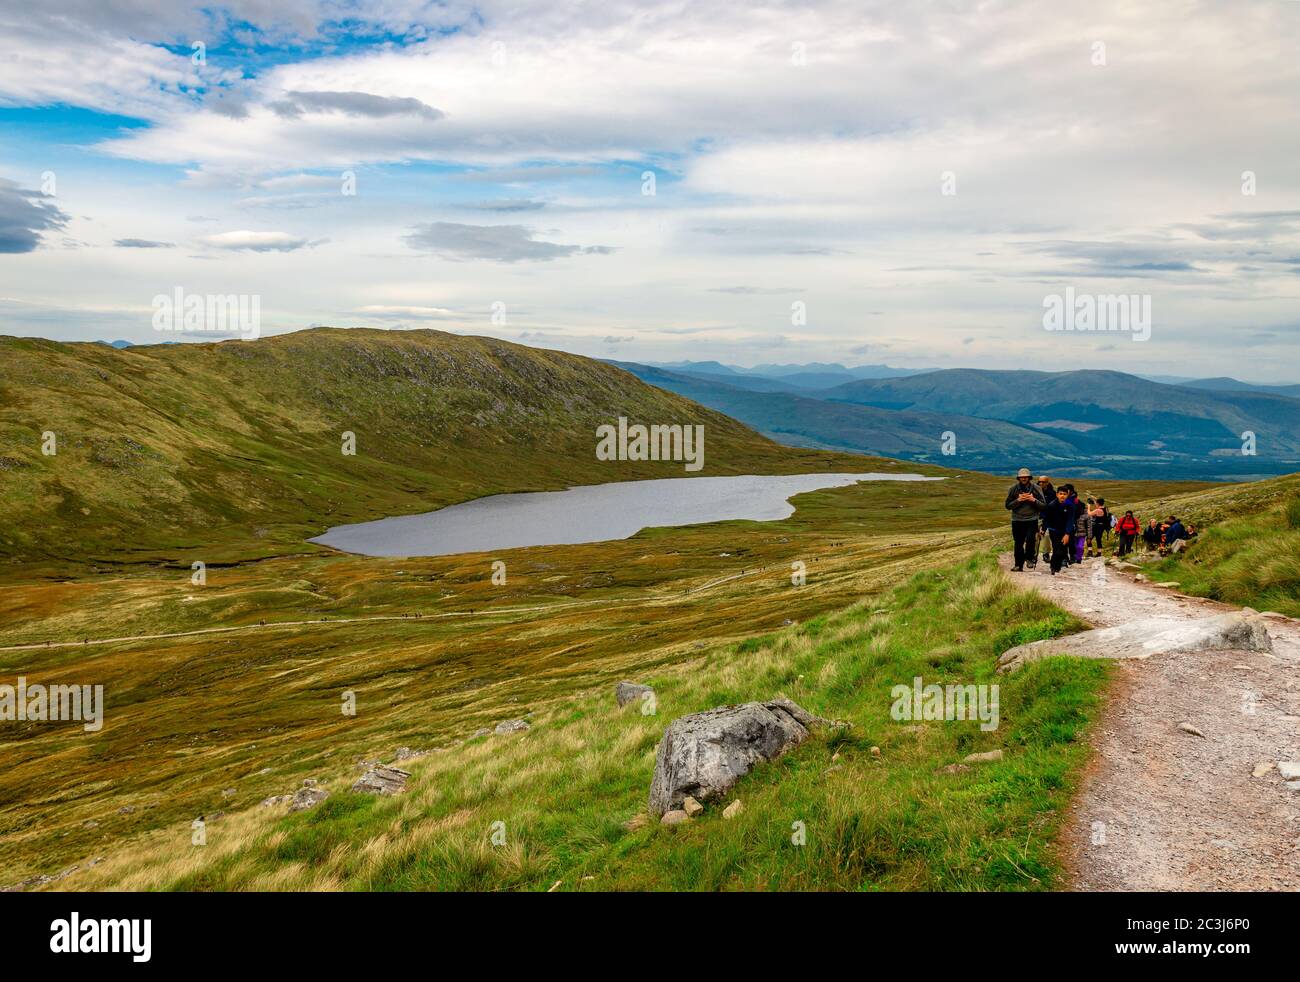 Ben Nevis / Reino Unido - Agosto 24 2019: La gente camina sobre Ben Nevis en las tierras altas de Escocia con el lago Lochan Meall una t-Suidhe en el fondo. Foto de stock